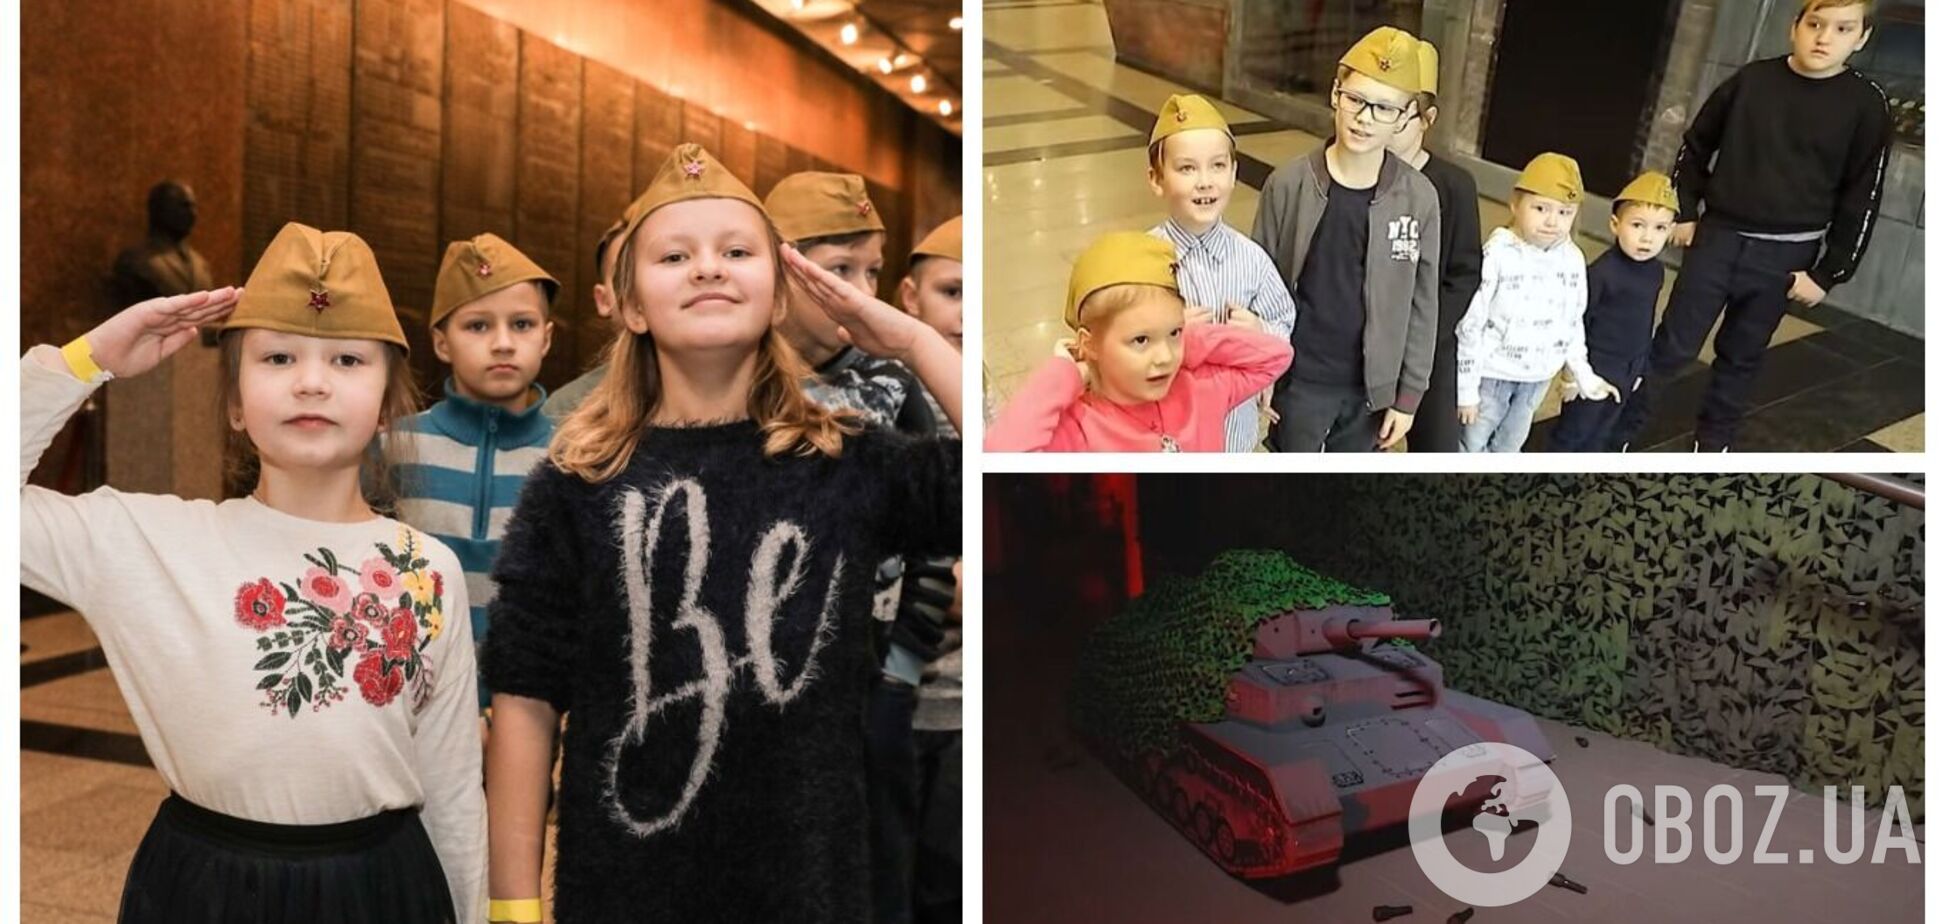 Вместо конфет – пилотка и камуфляжный мешок: в РФ детям решили устроить 'военное' празднование Нового года